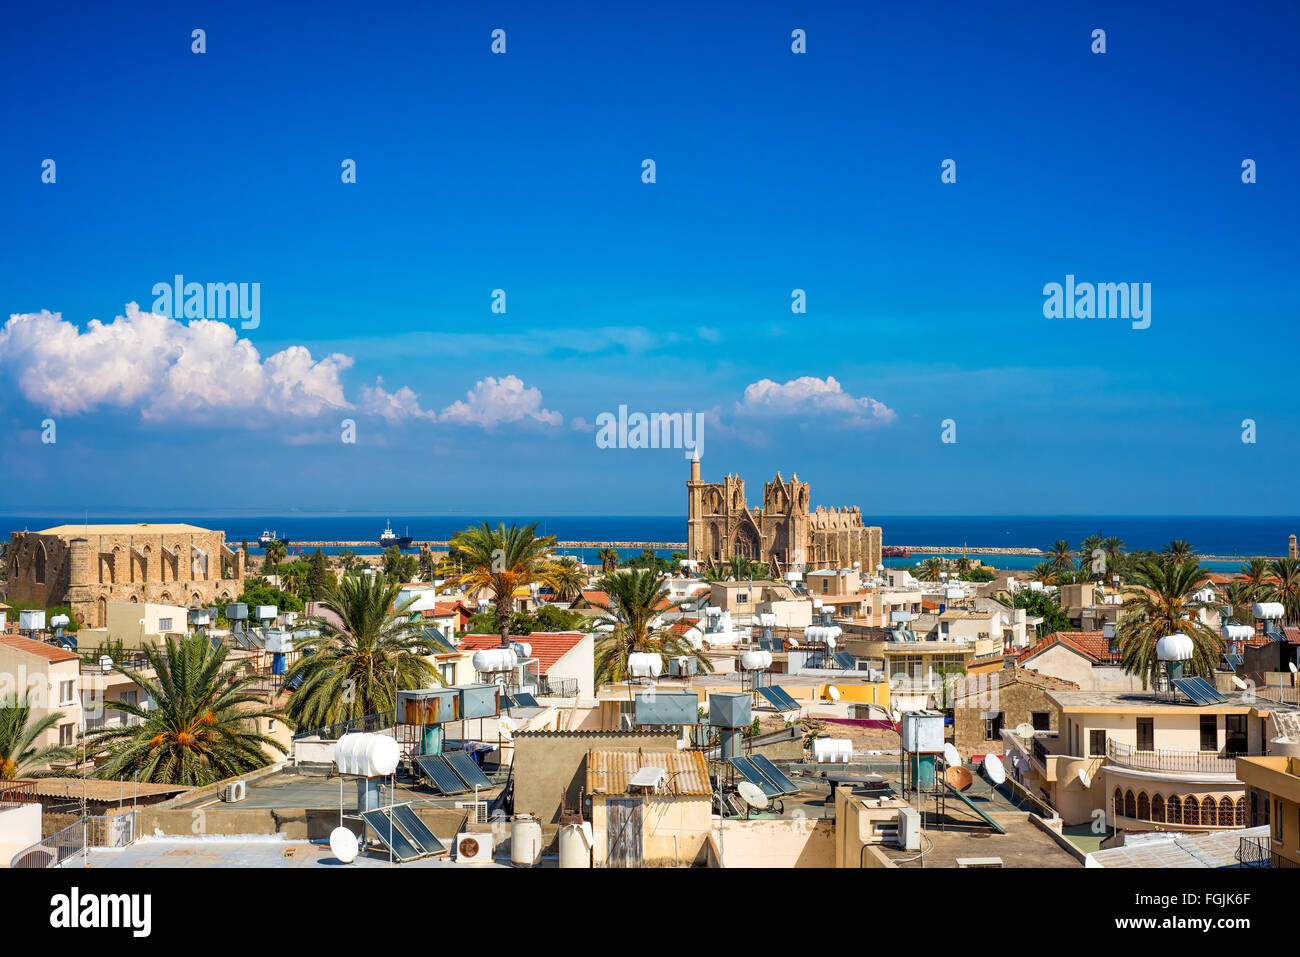 Vieille ville de Famagouste (Gazimagusa), Chypre. Elivated haute vue. Banque D'Images